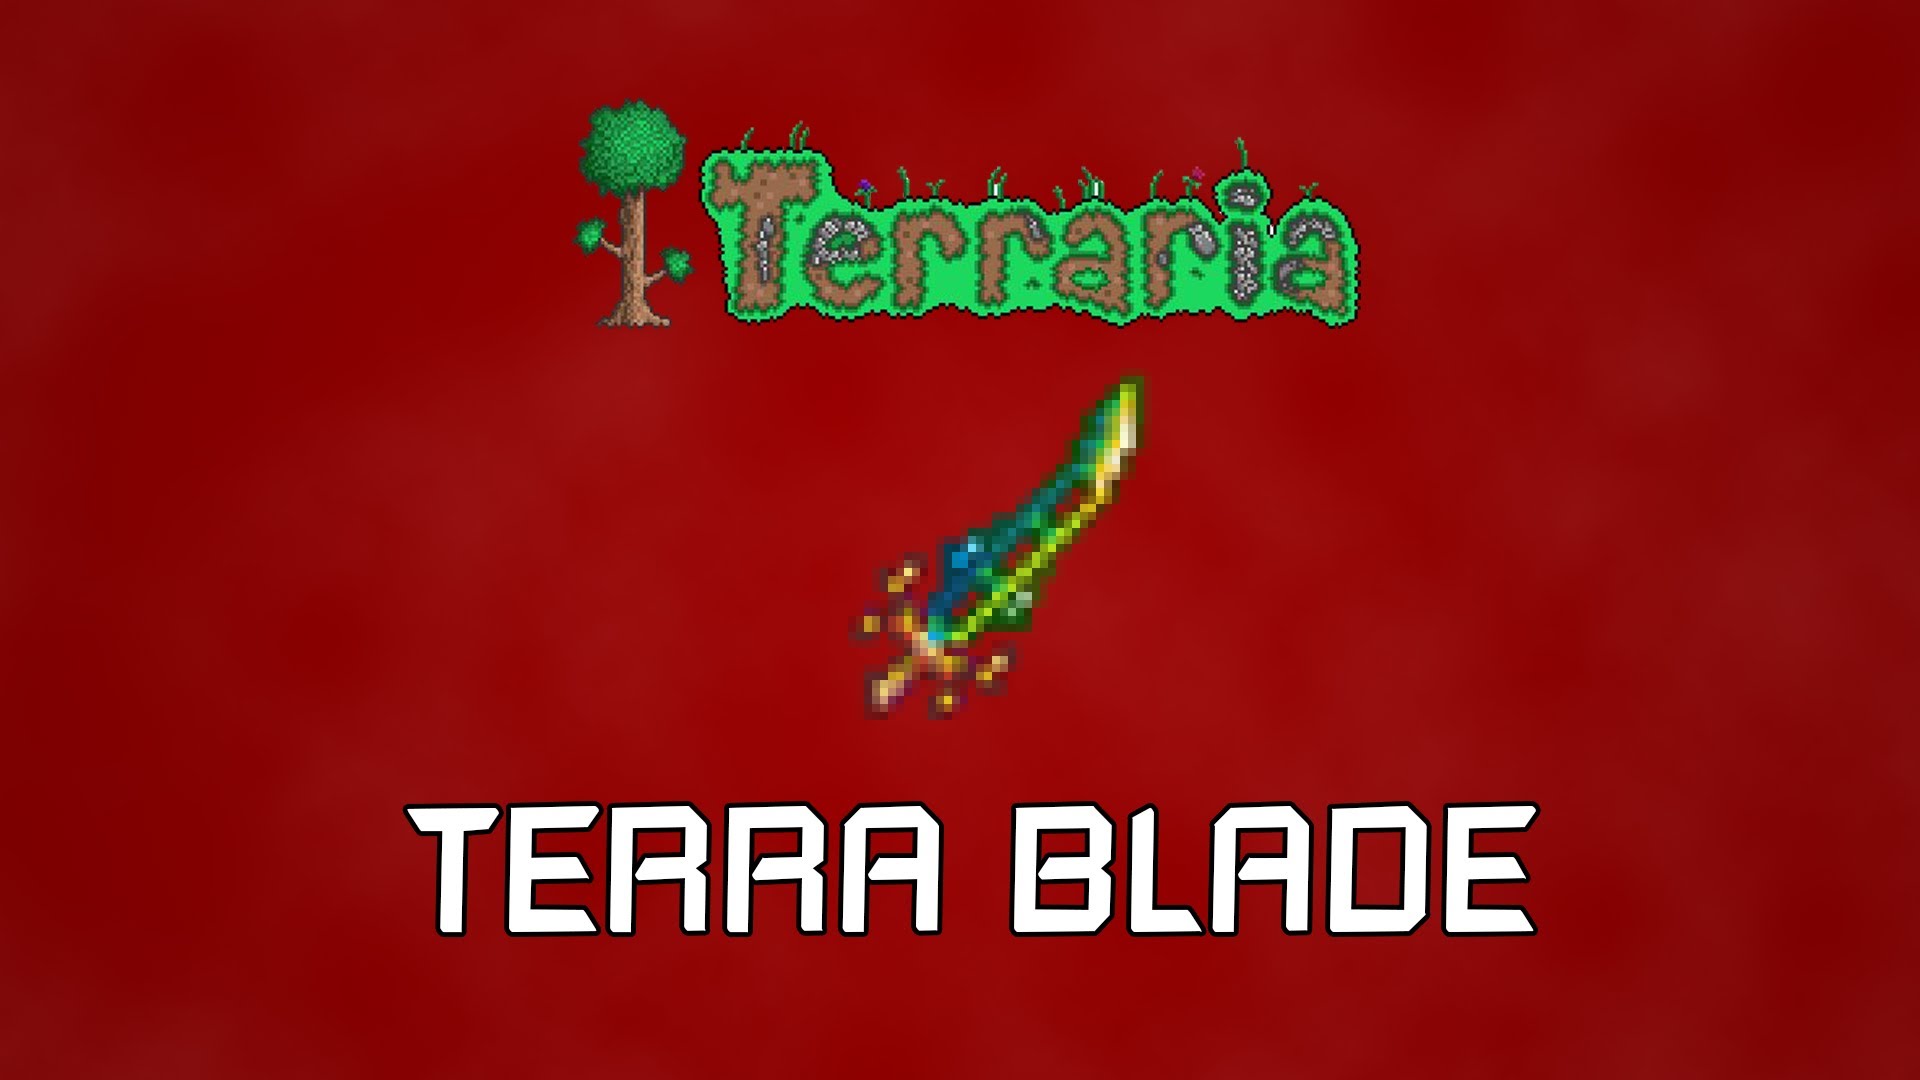 Talon blade terraria фото 20